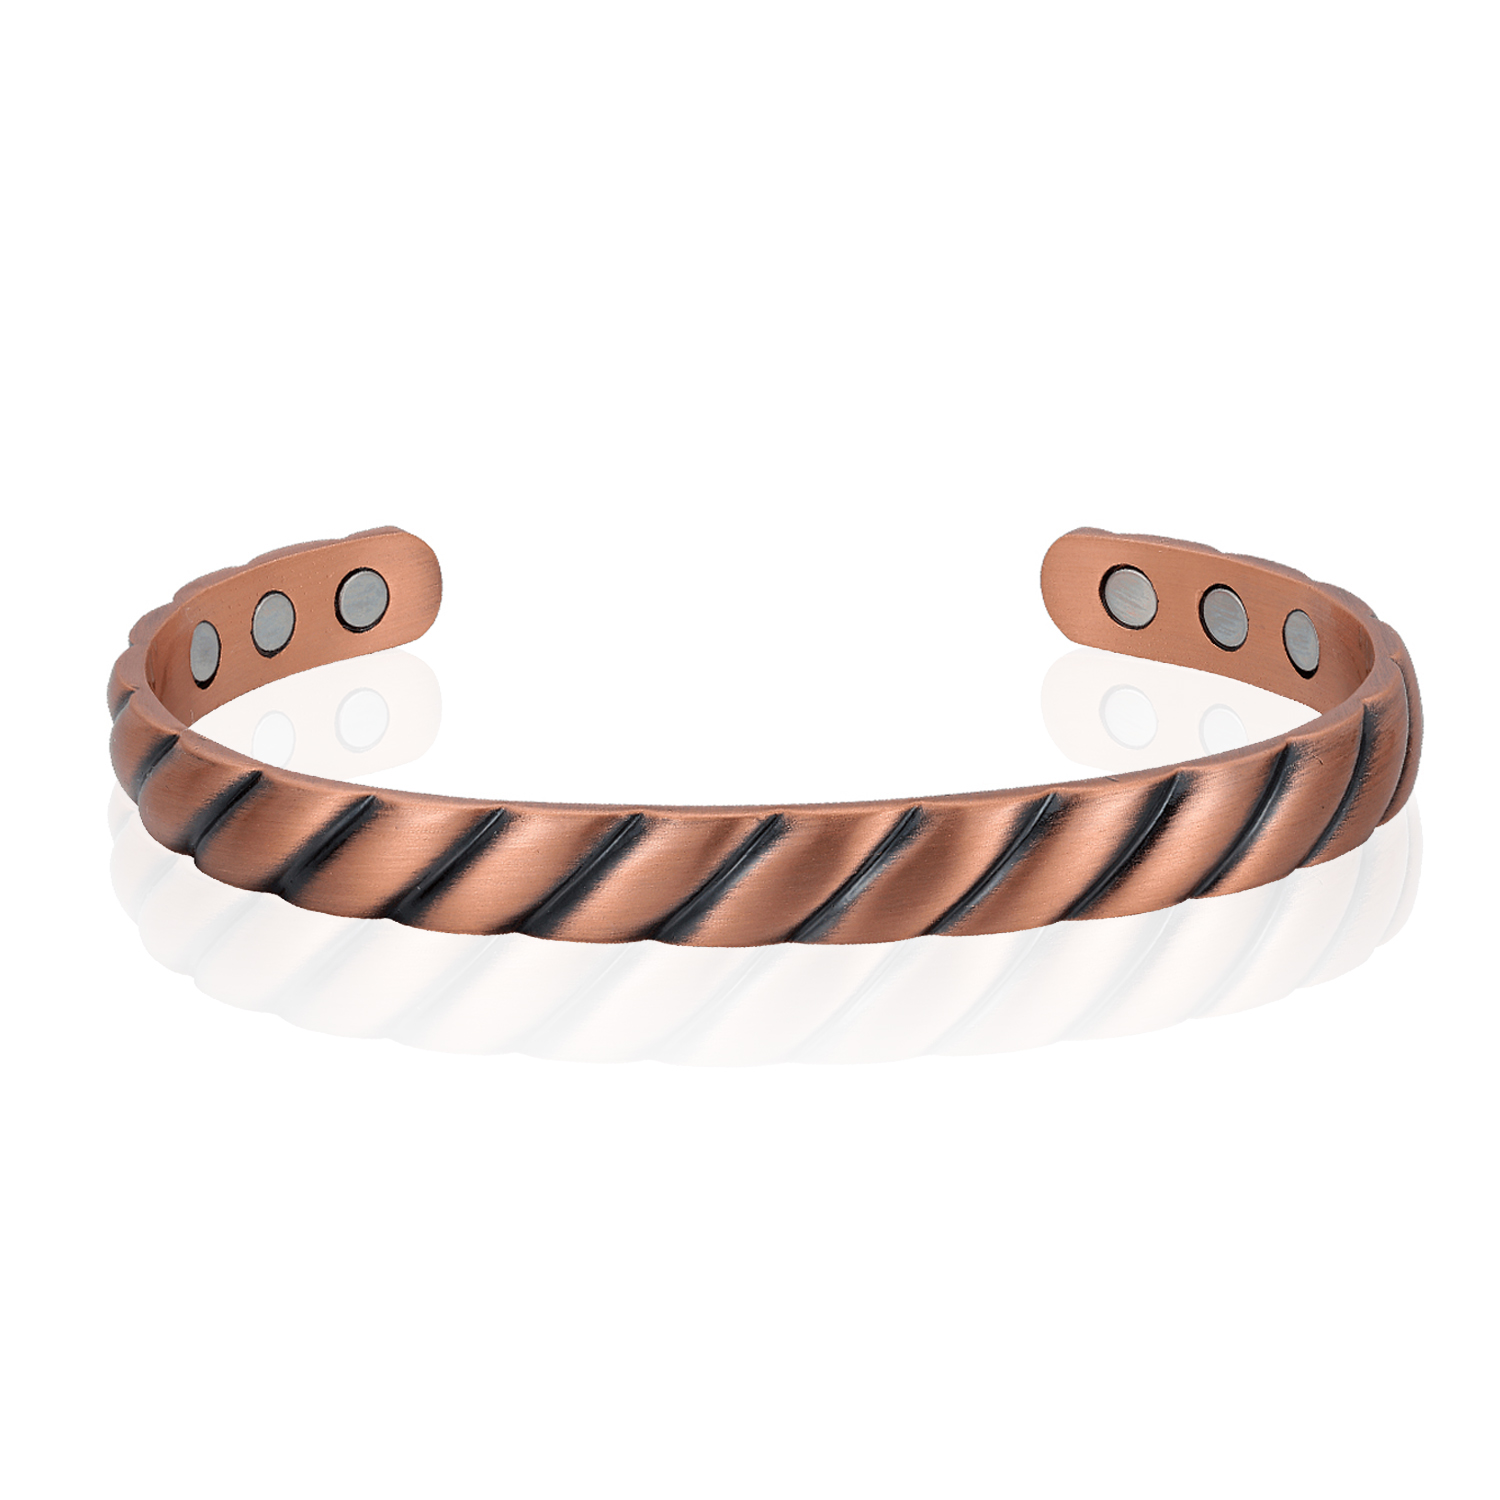 How to wear a copper bracelet, DEMI+CO - DEMI+CO Jewellery